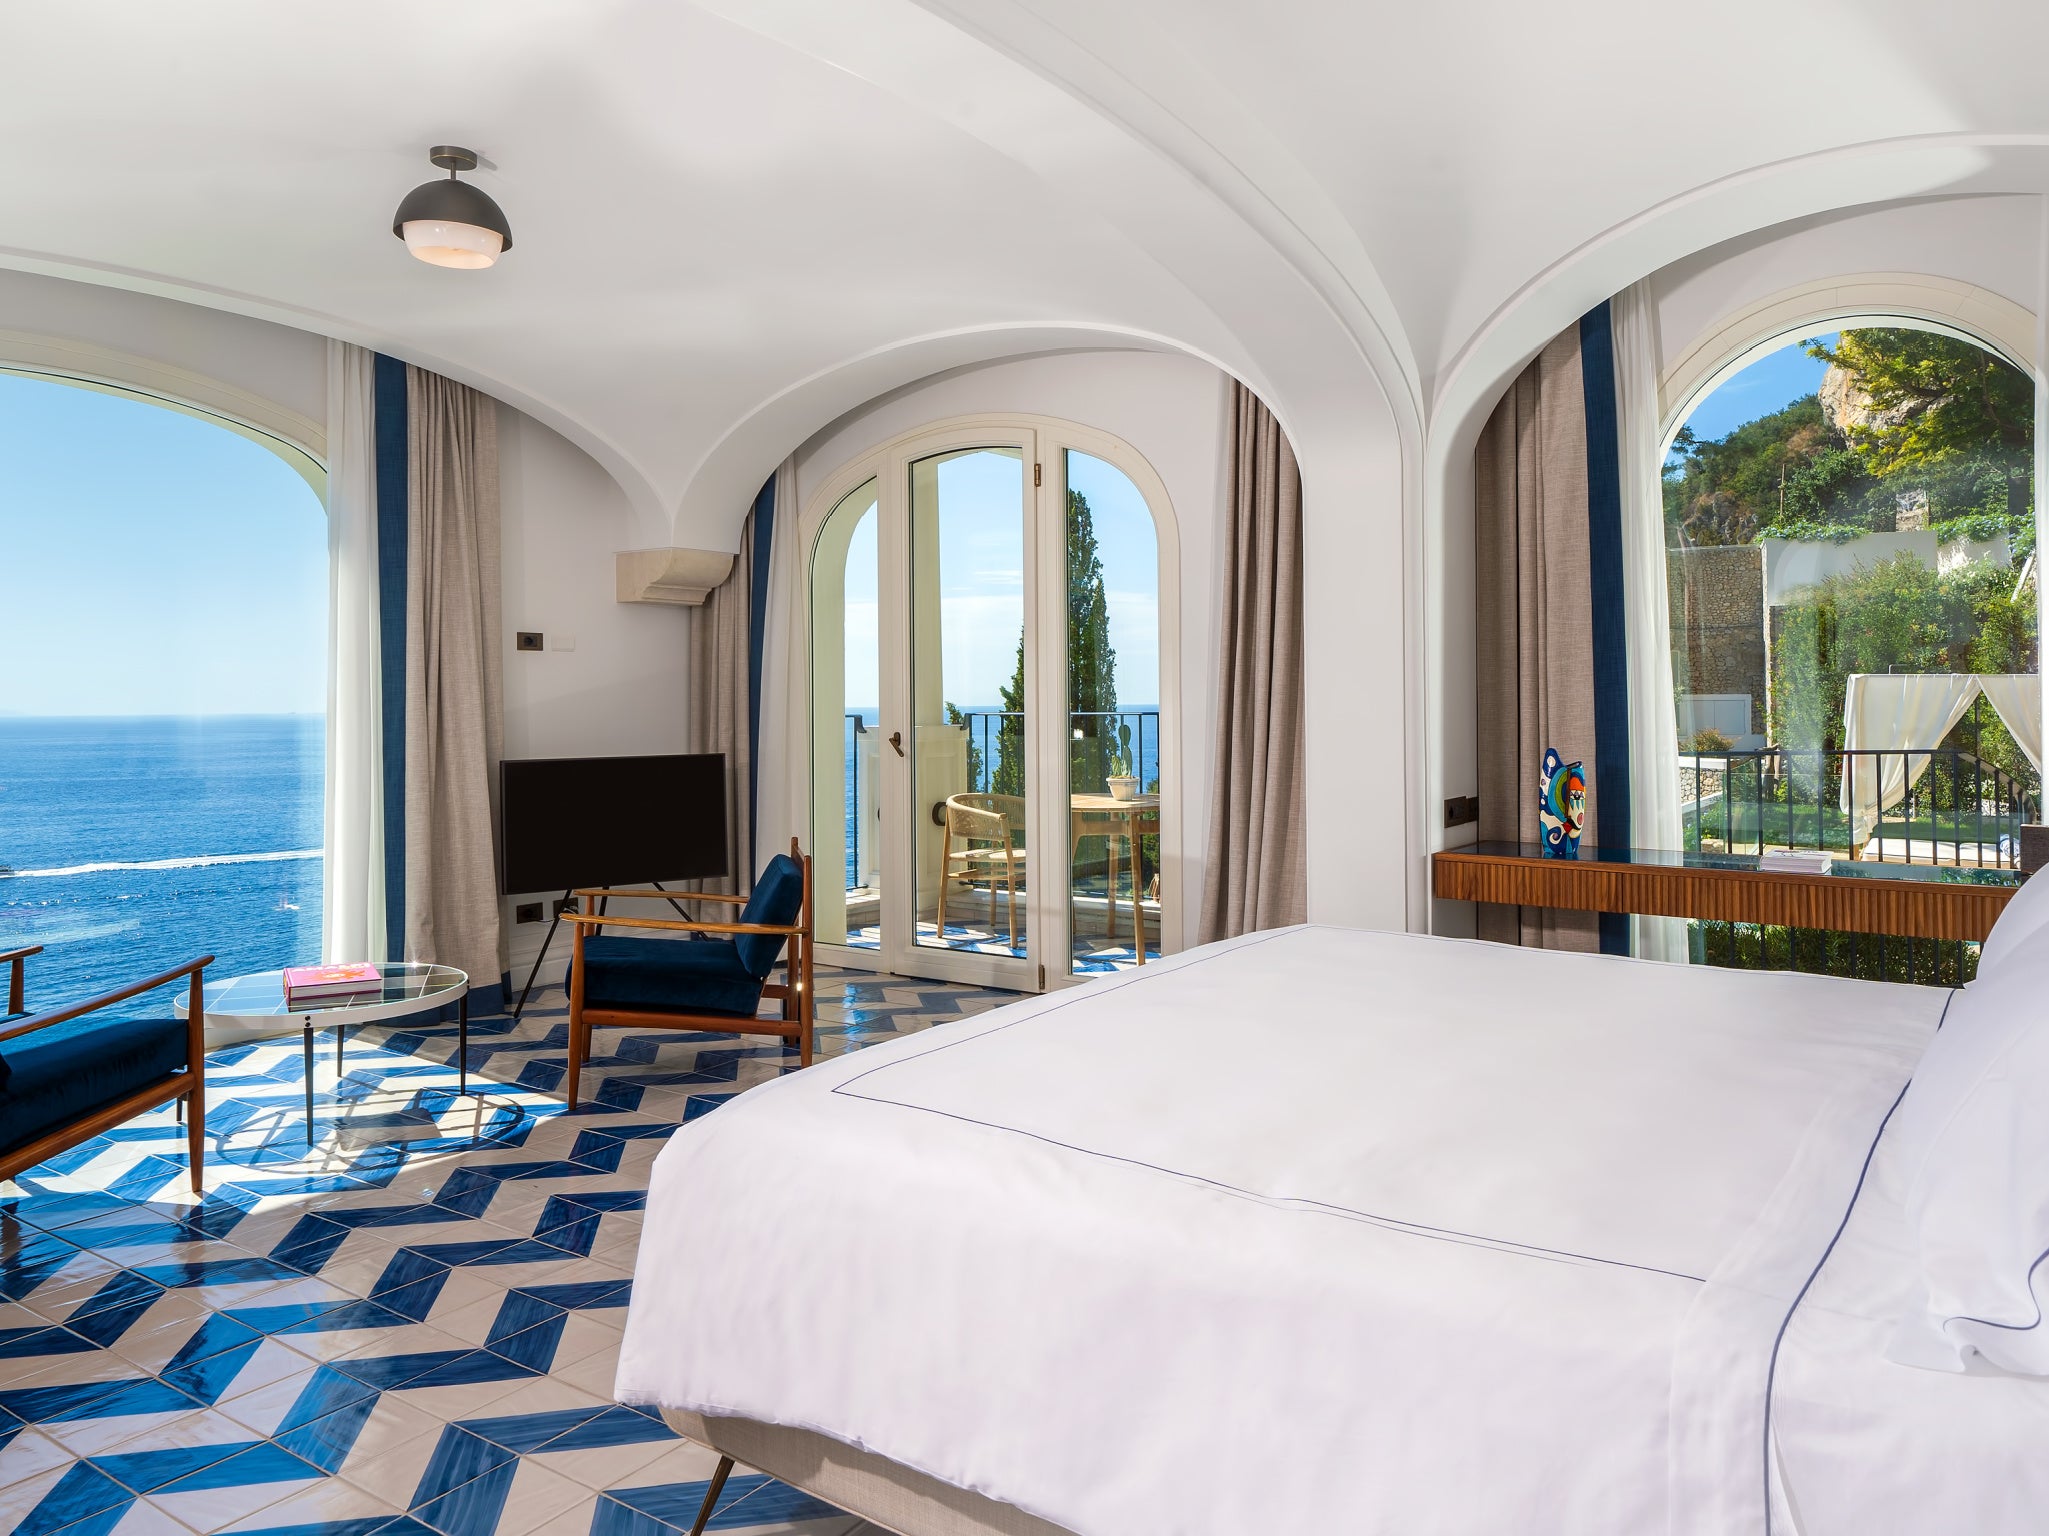 All the 45 rooms at Bordo Santandrea have sea views